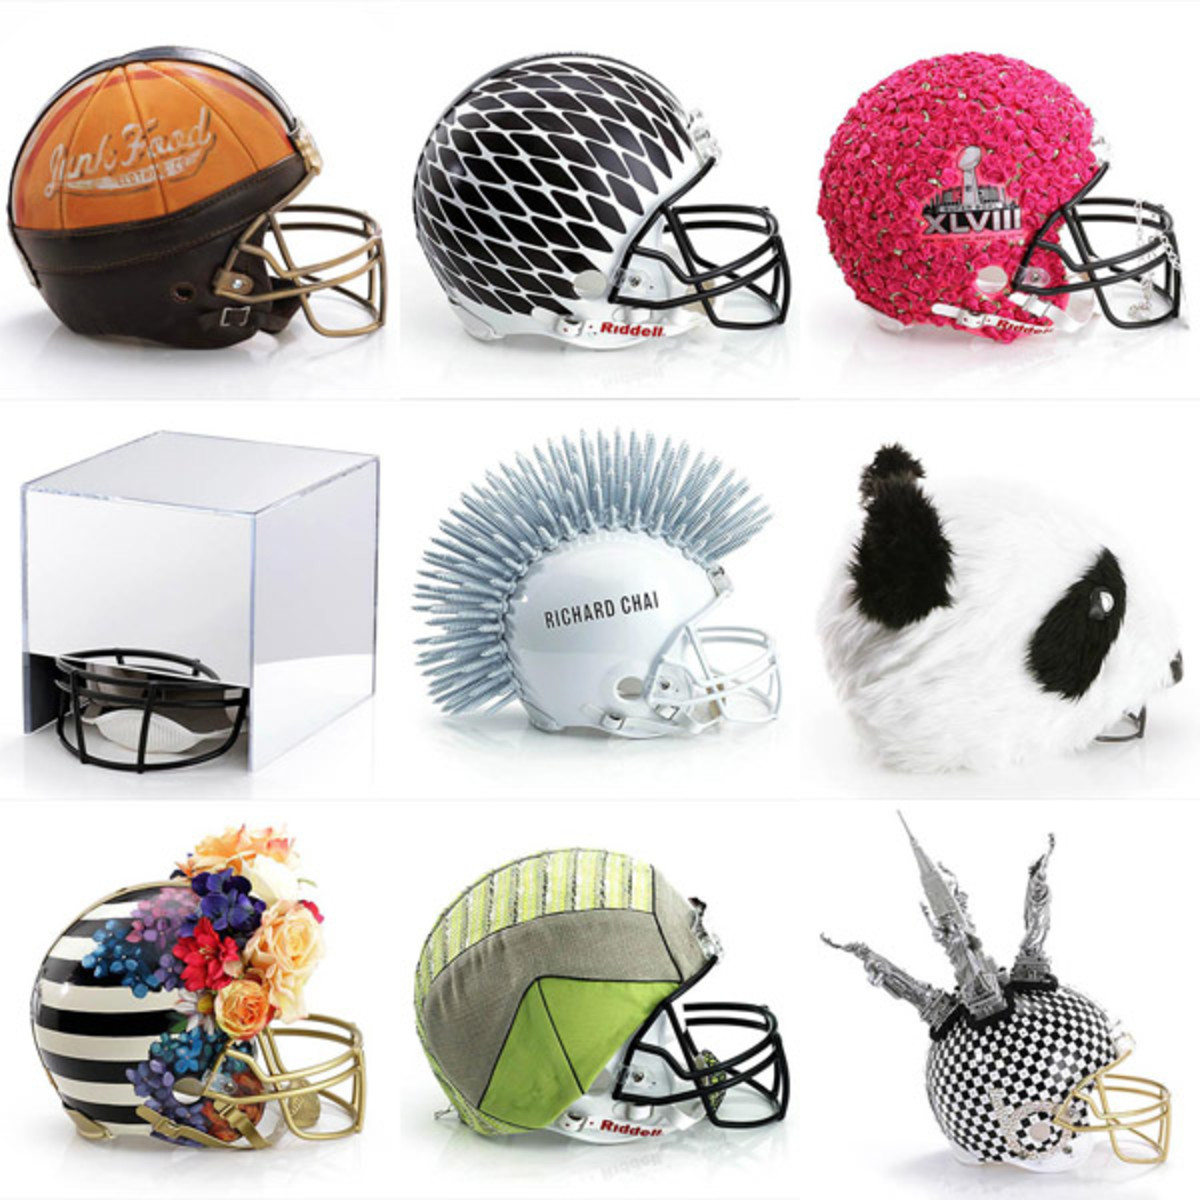 bloomingdale's helmet auction super bowl xlviii